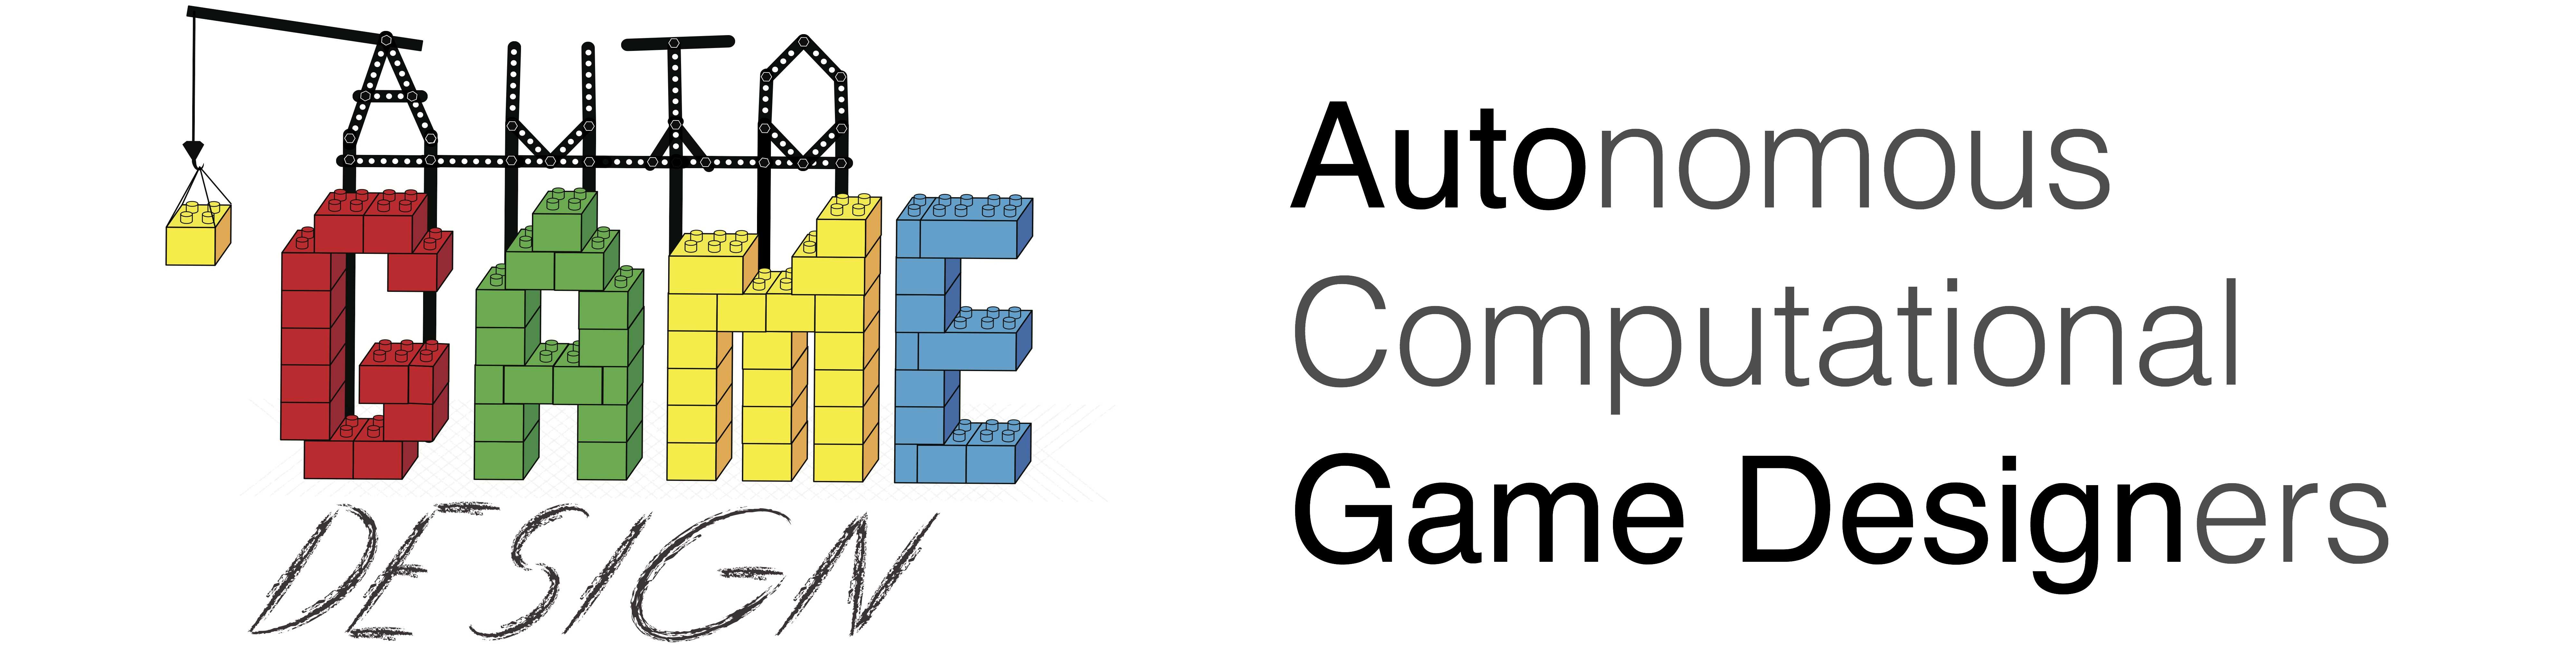 Autonomous Computational Game Designers